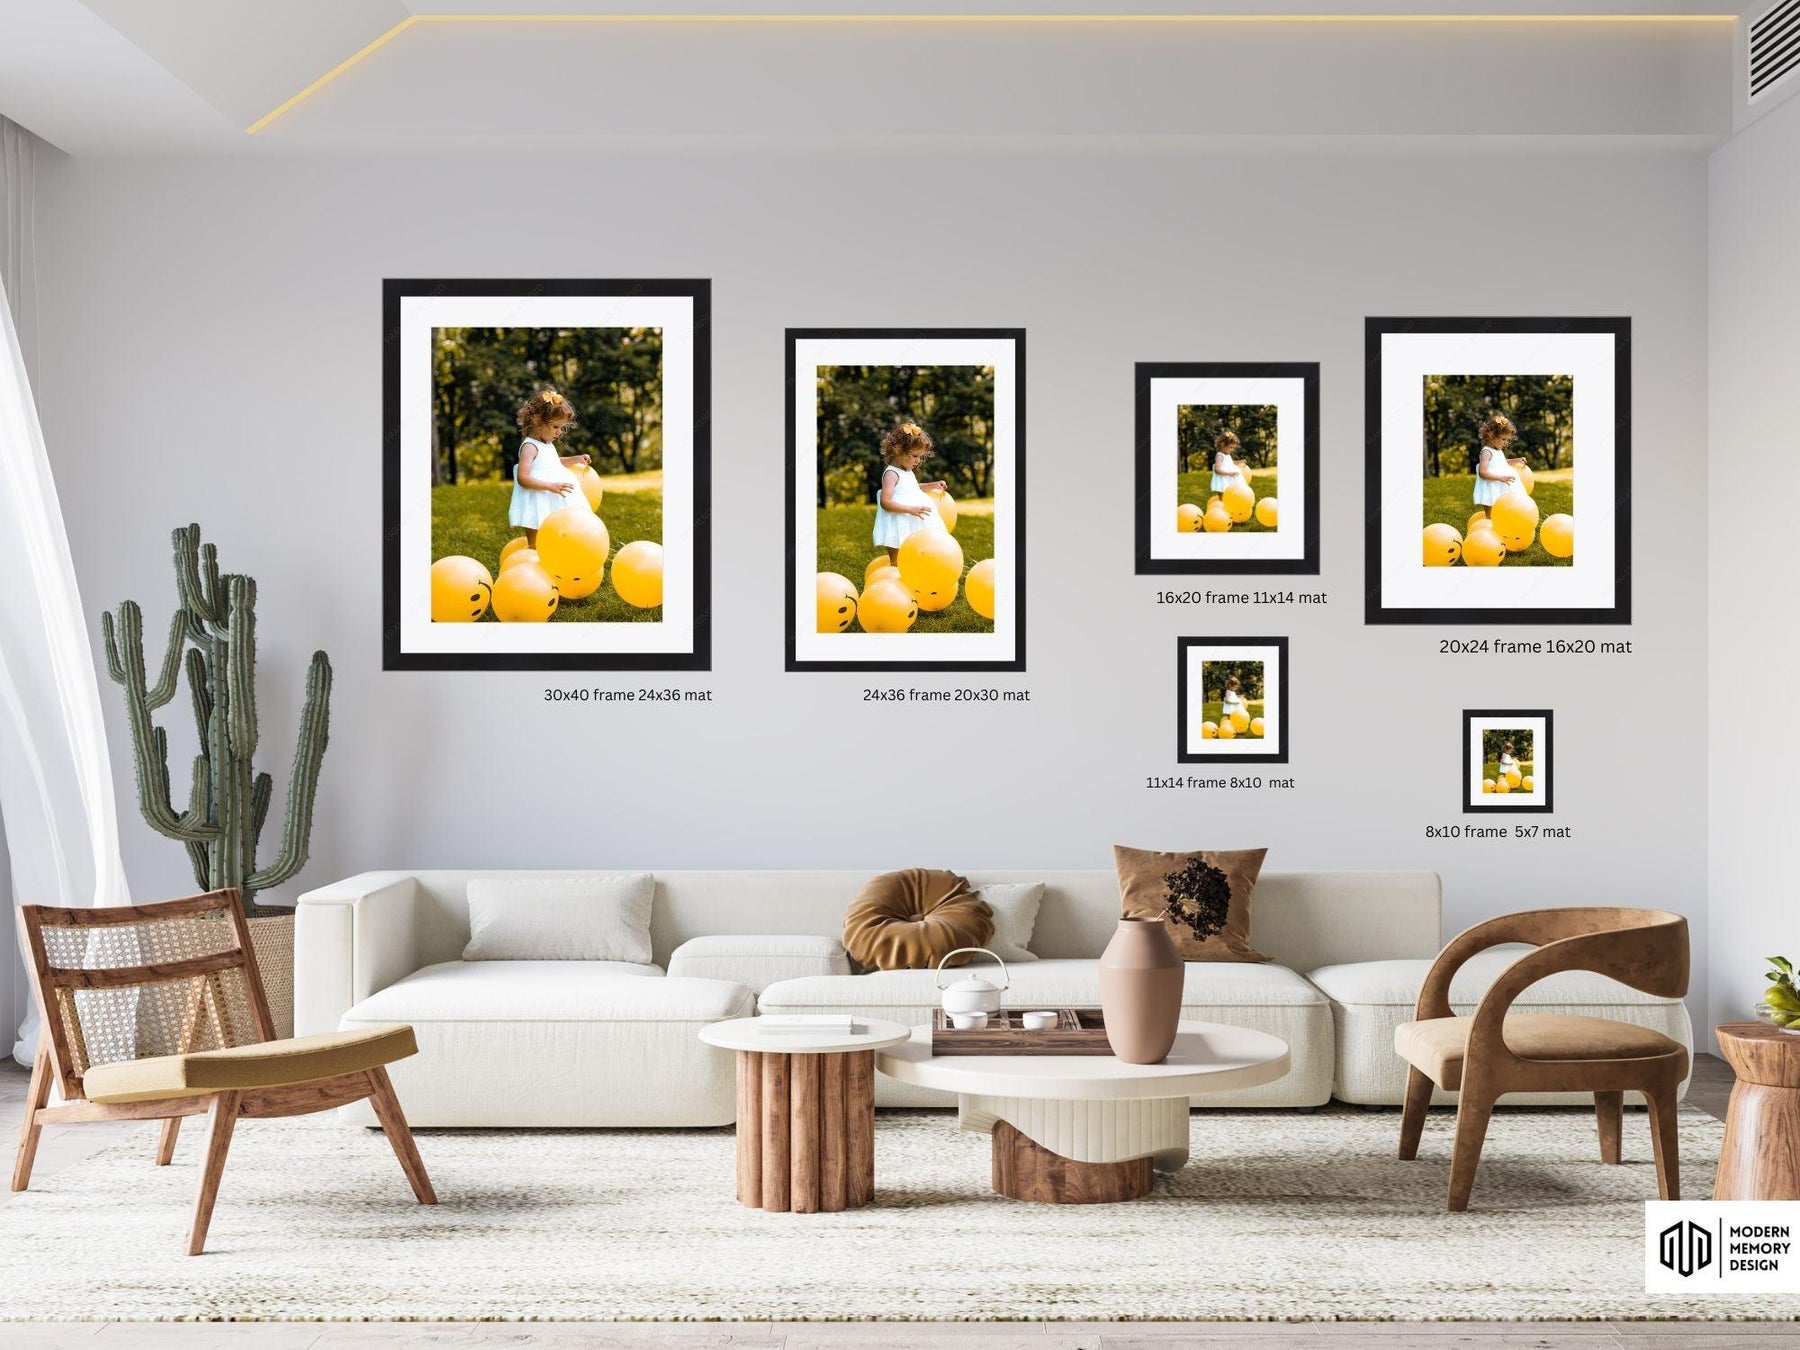 Best online custom picture framing 2023 - Modern Memory Design Picture frames - NJ Frame shop Custom framing